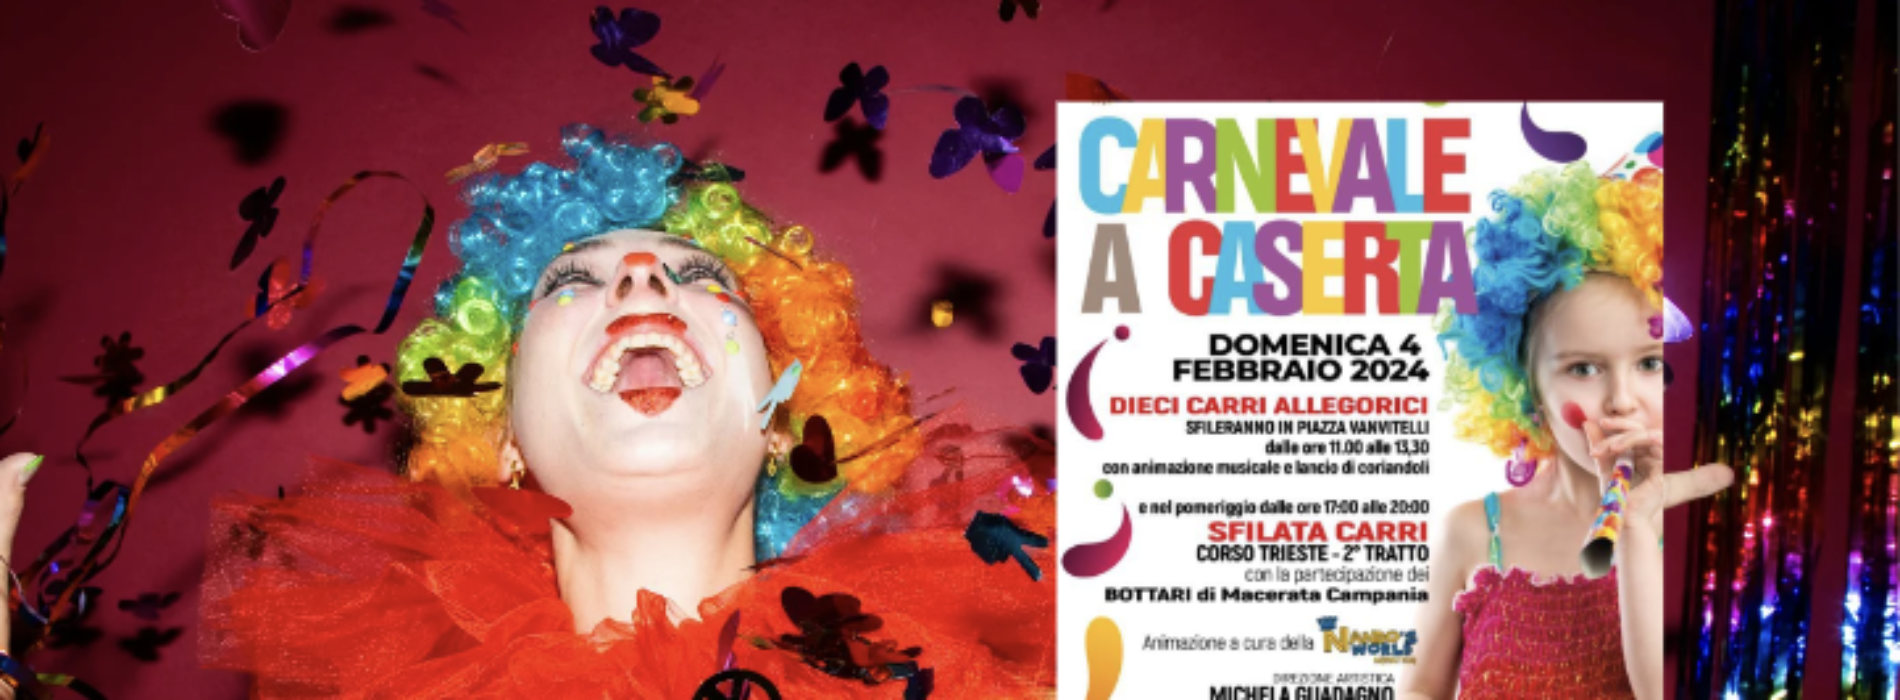 Carnevale a Caserta, in città carri allegorici e i Bottari